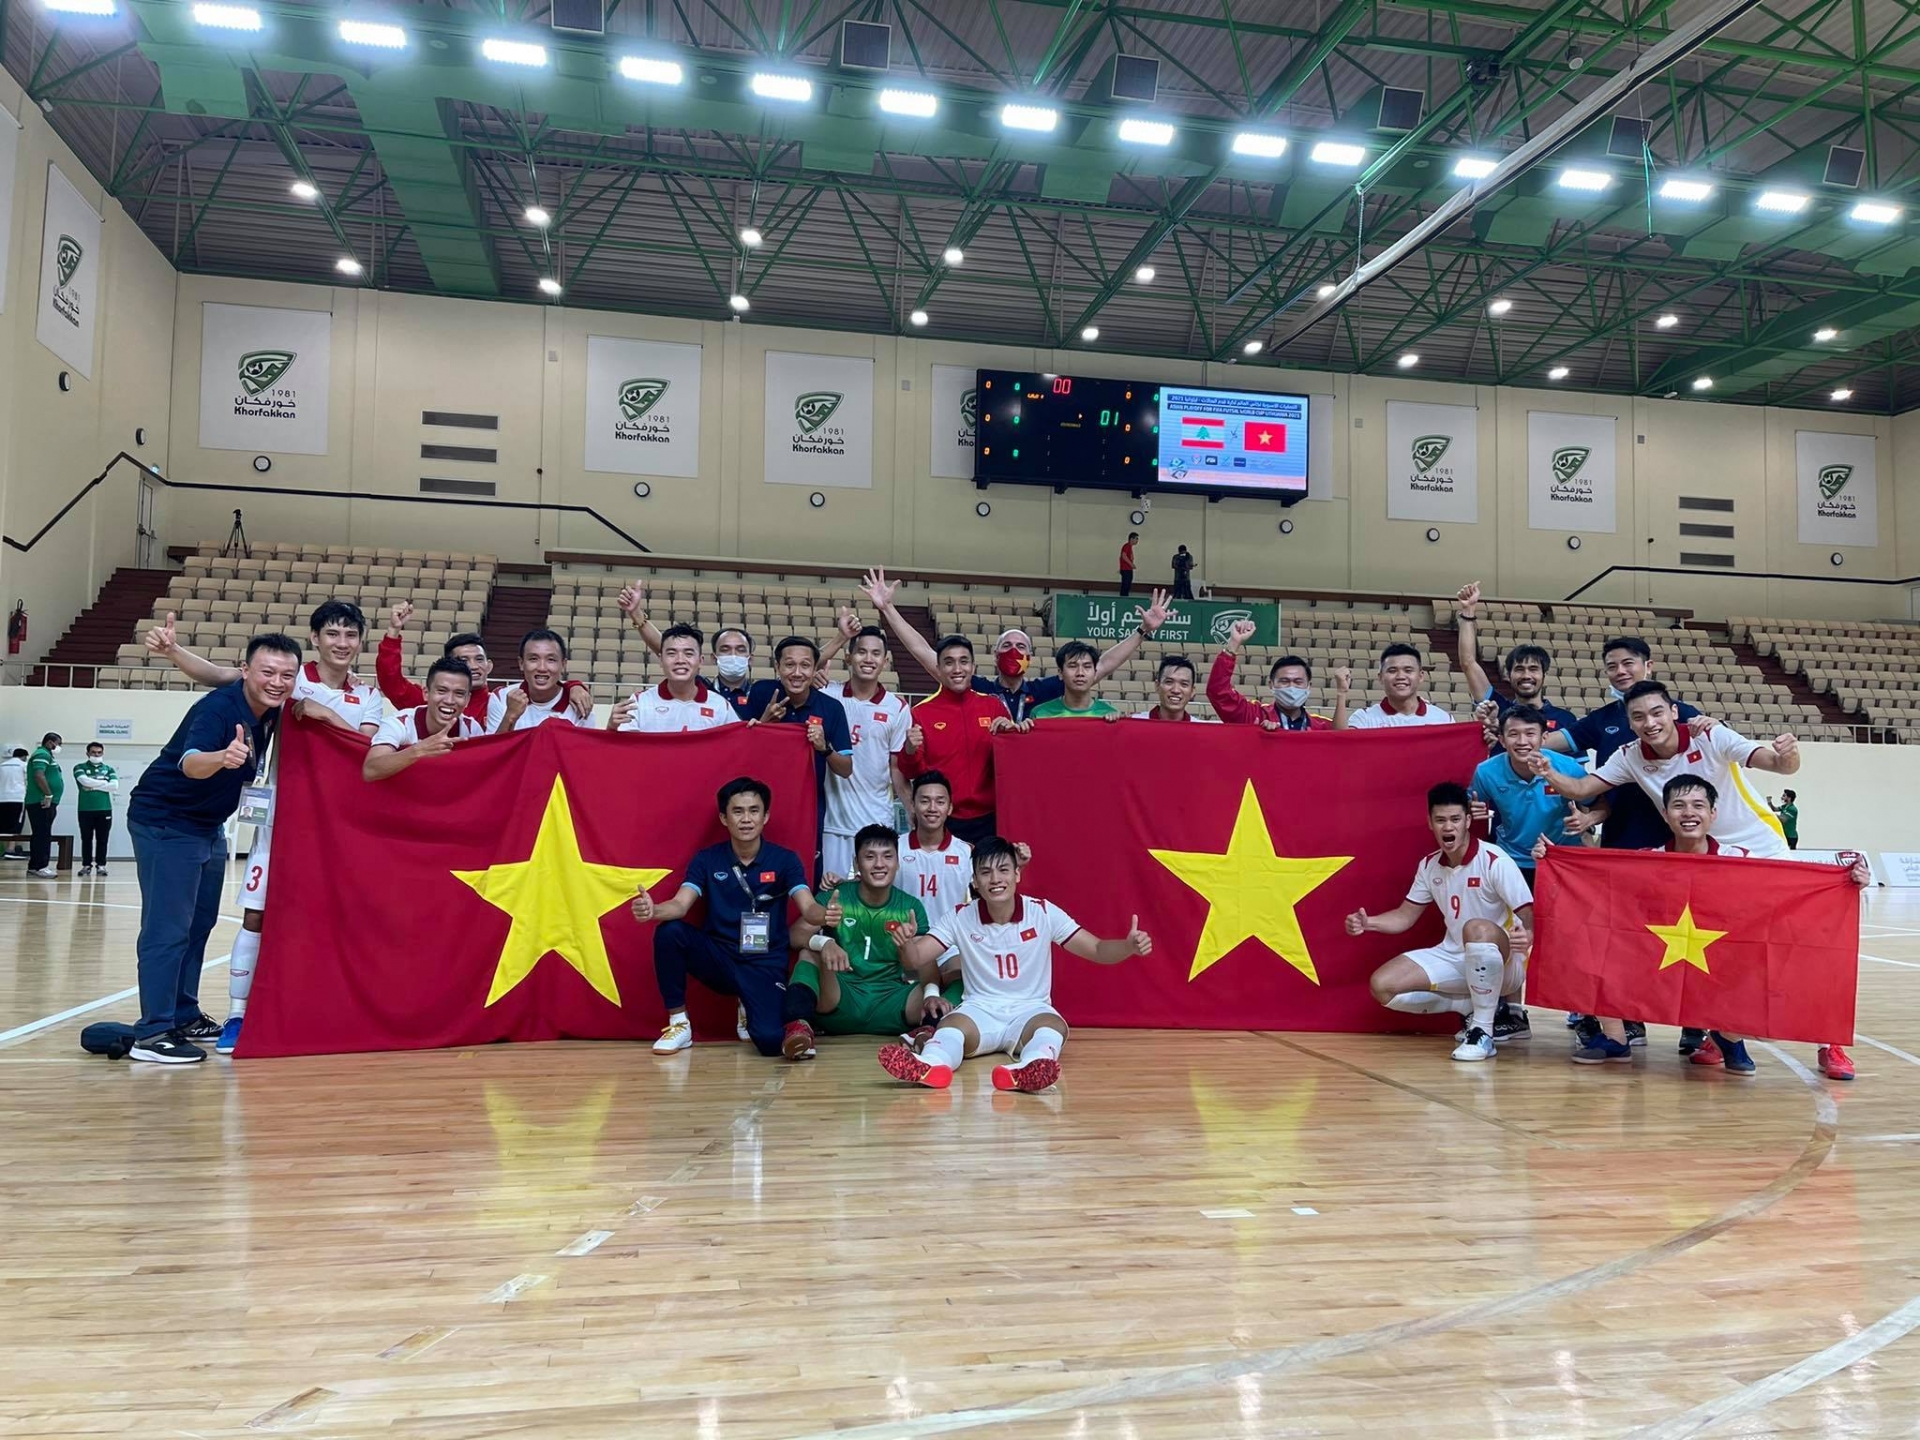 Vỡ òa tấm vé dự World Cup, ĐT Việt Nam hát vang 'Như có Bác Hồ trong ngày vui đại thắng' để ăn mừng 5